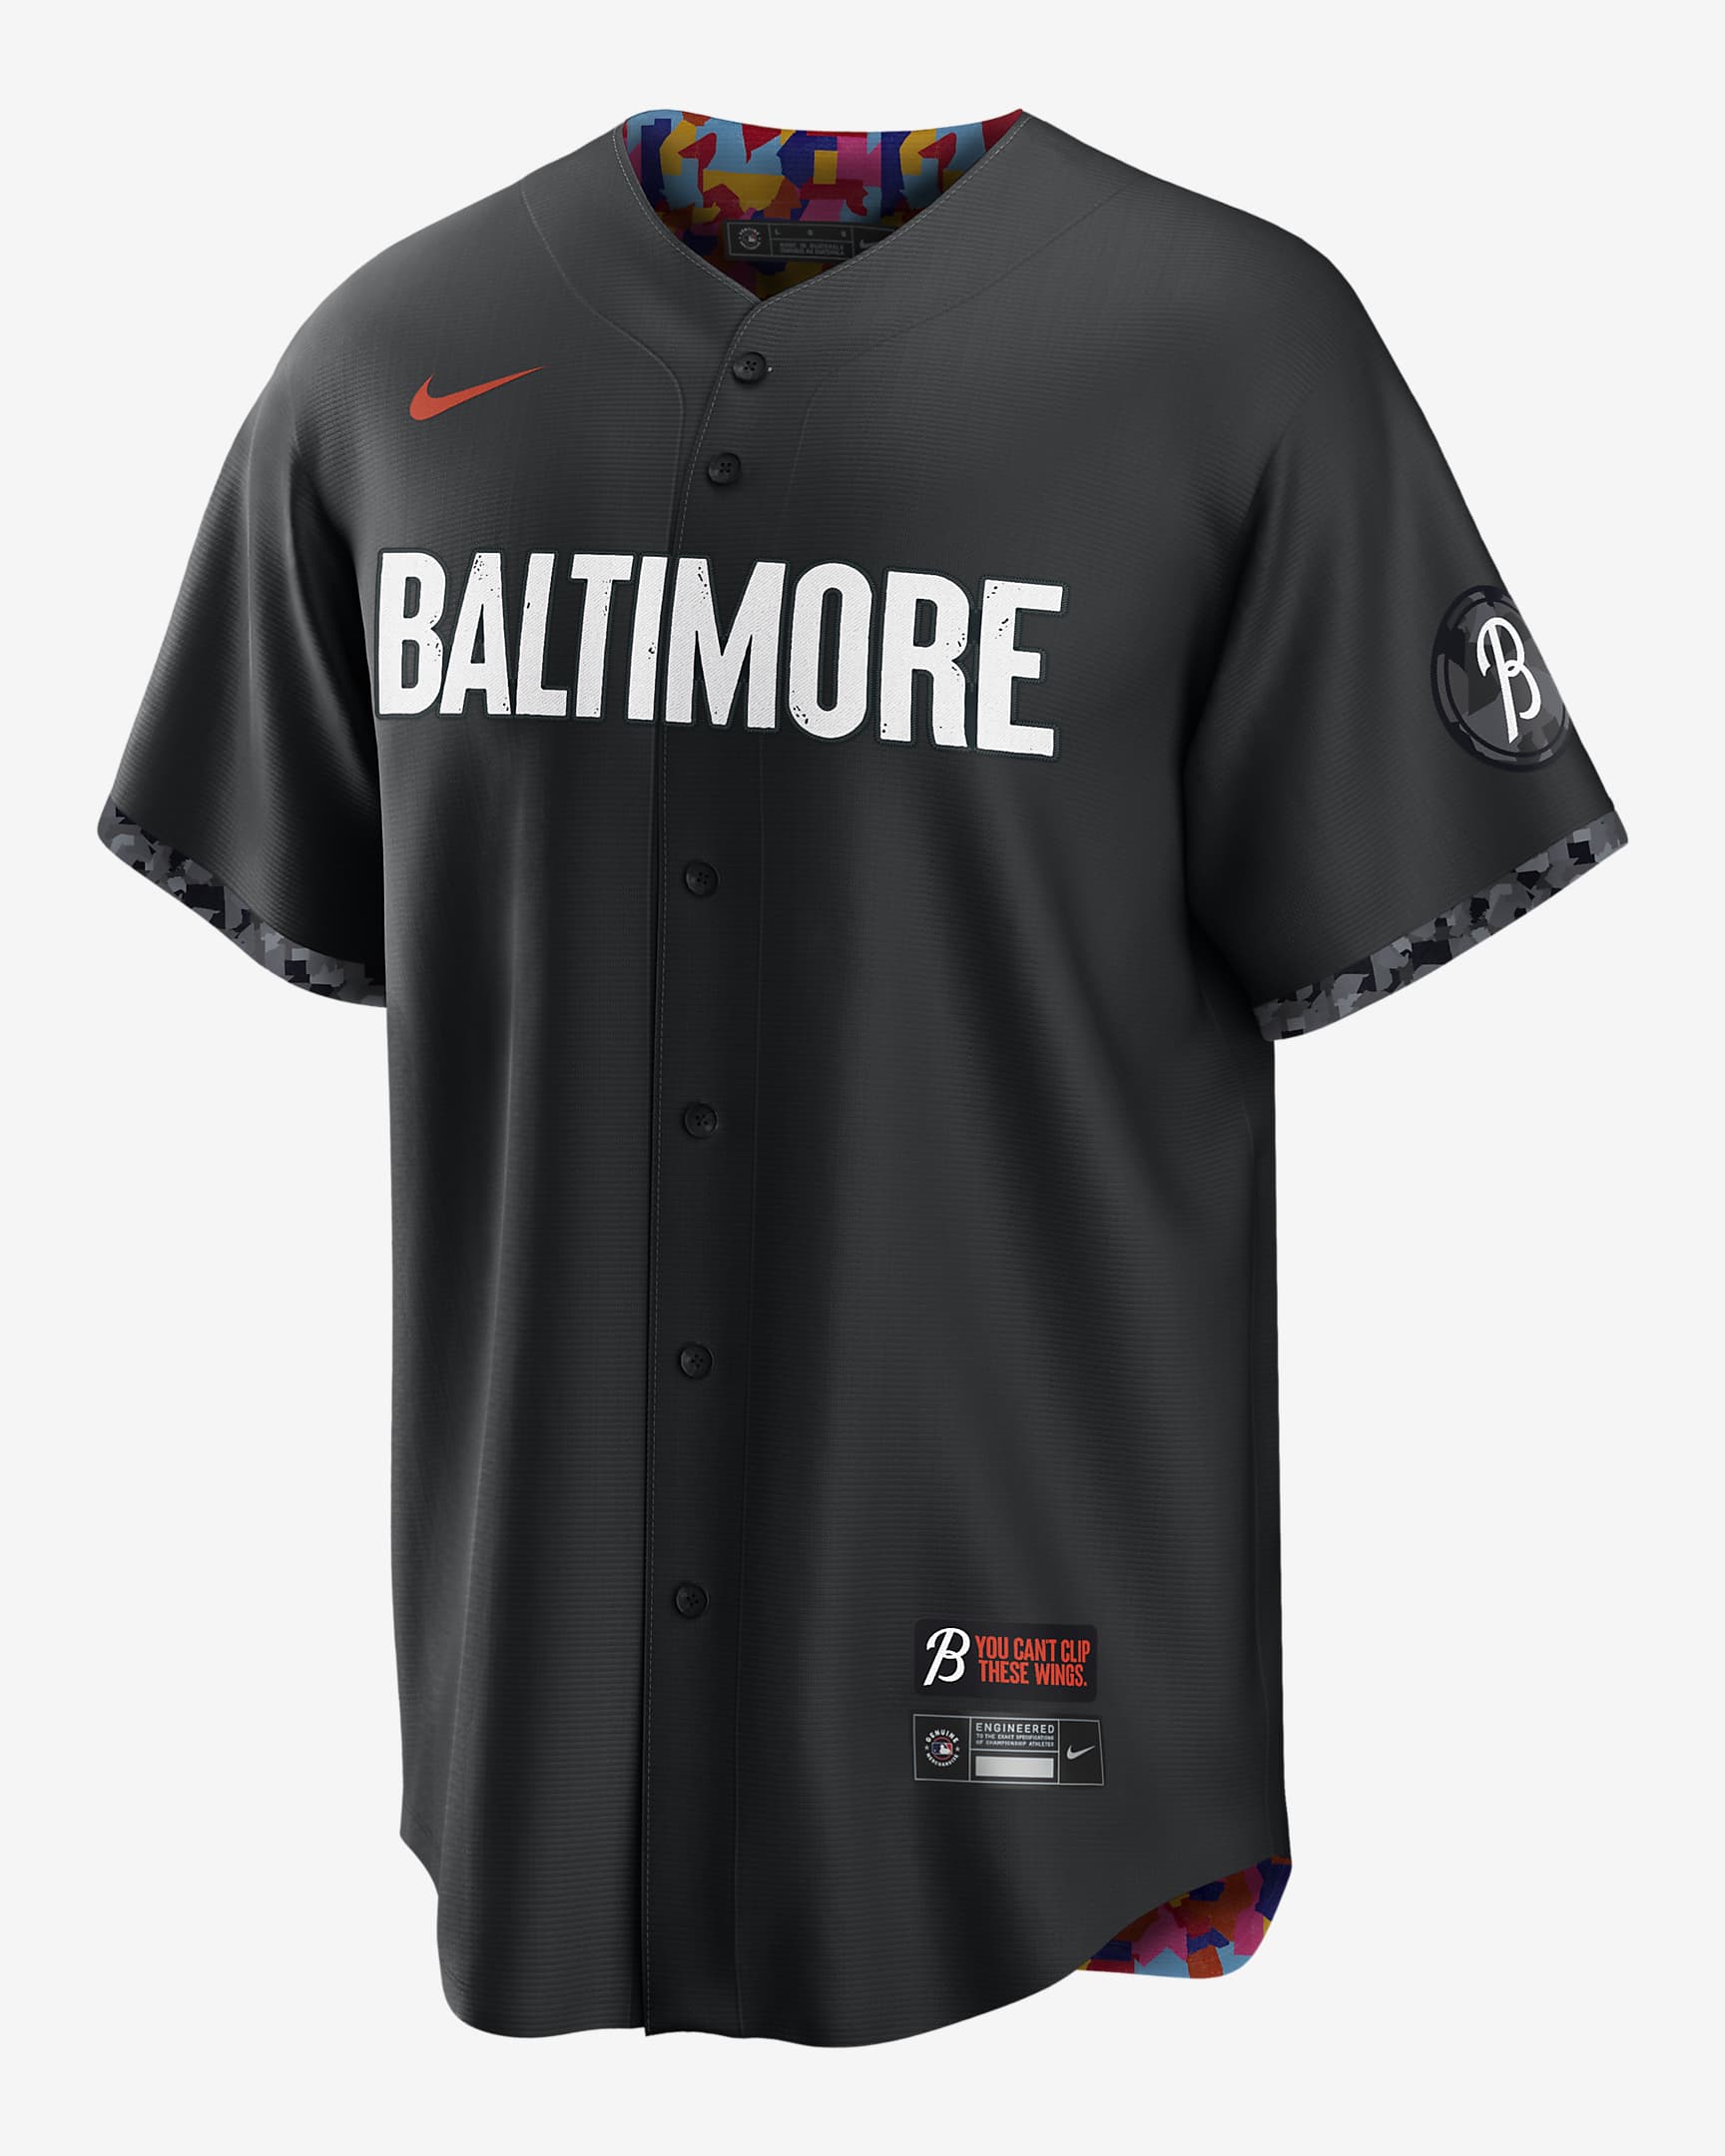 MLB Baltimore Orioles City Connect (Cal Ripken) Men's Replica Baseball